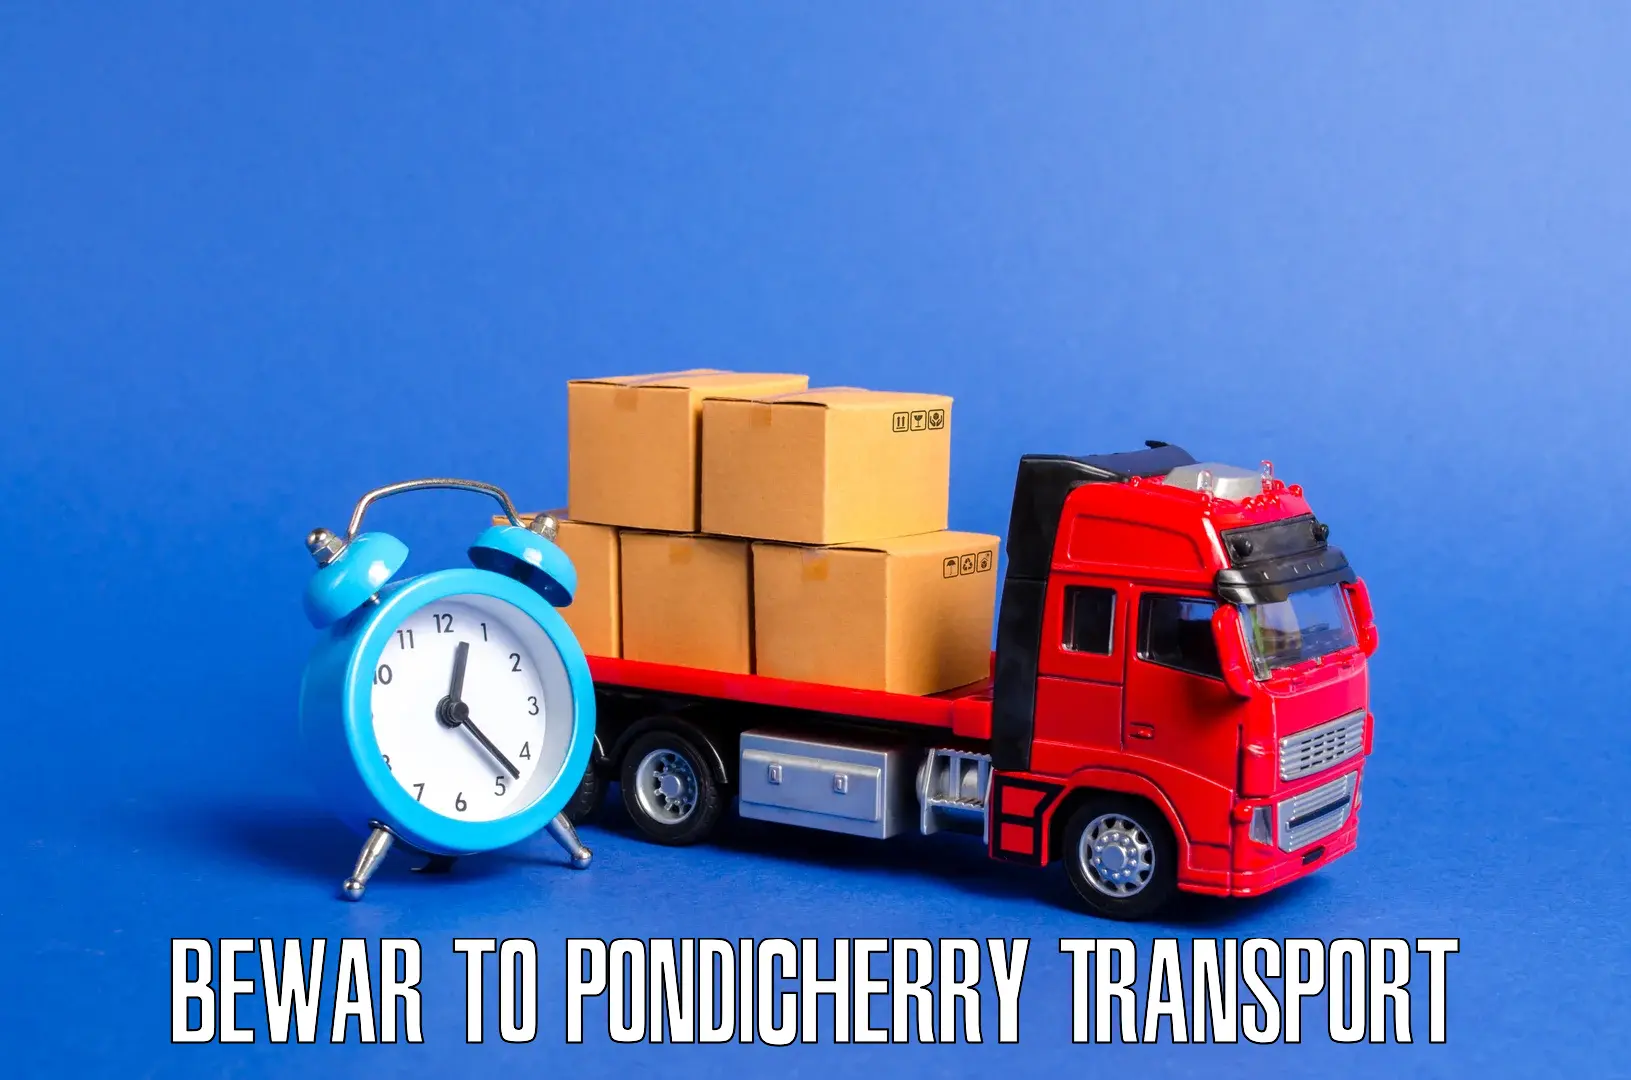 Land transport services Bewar to Pondicherry